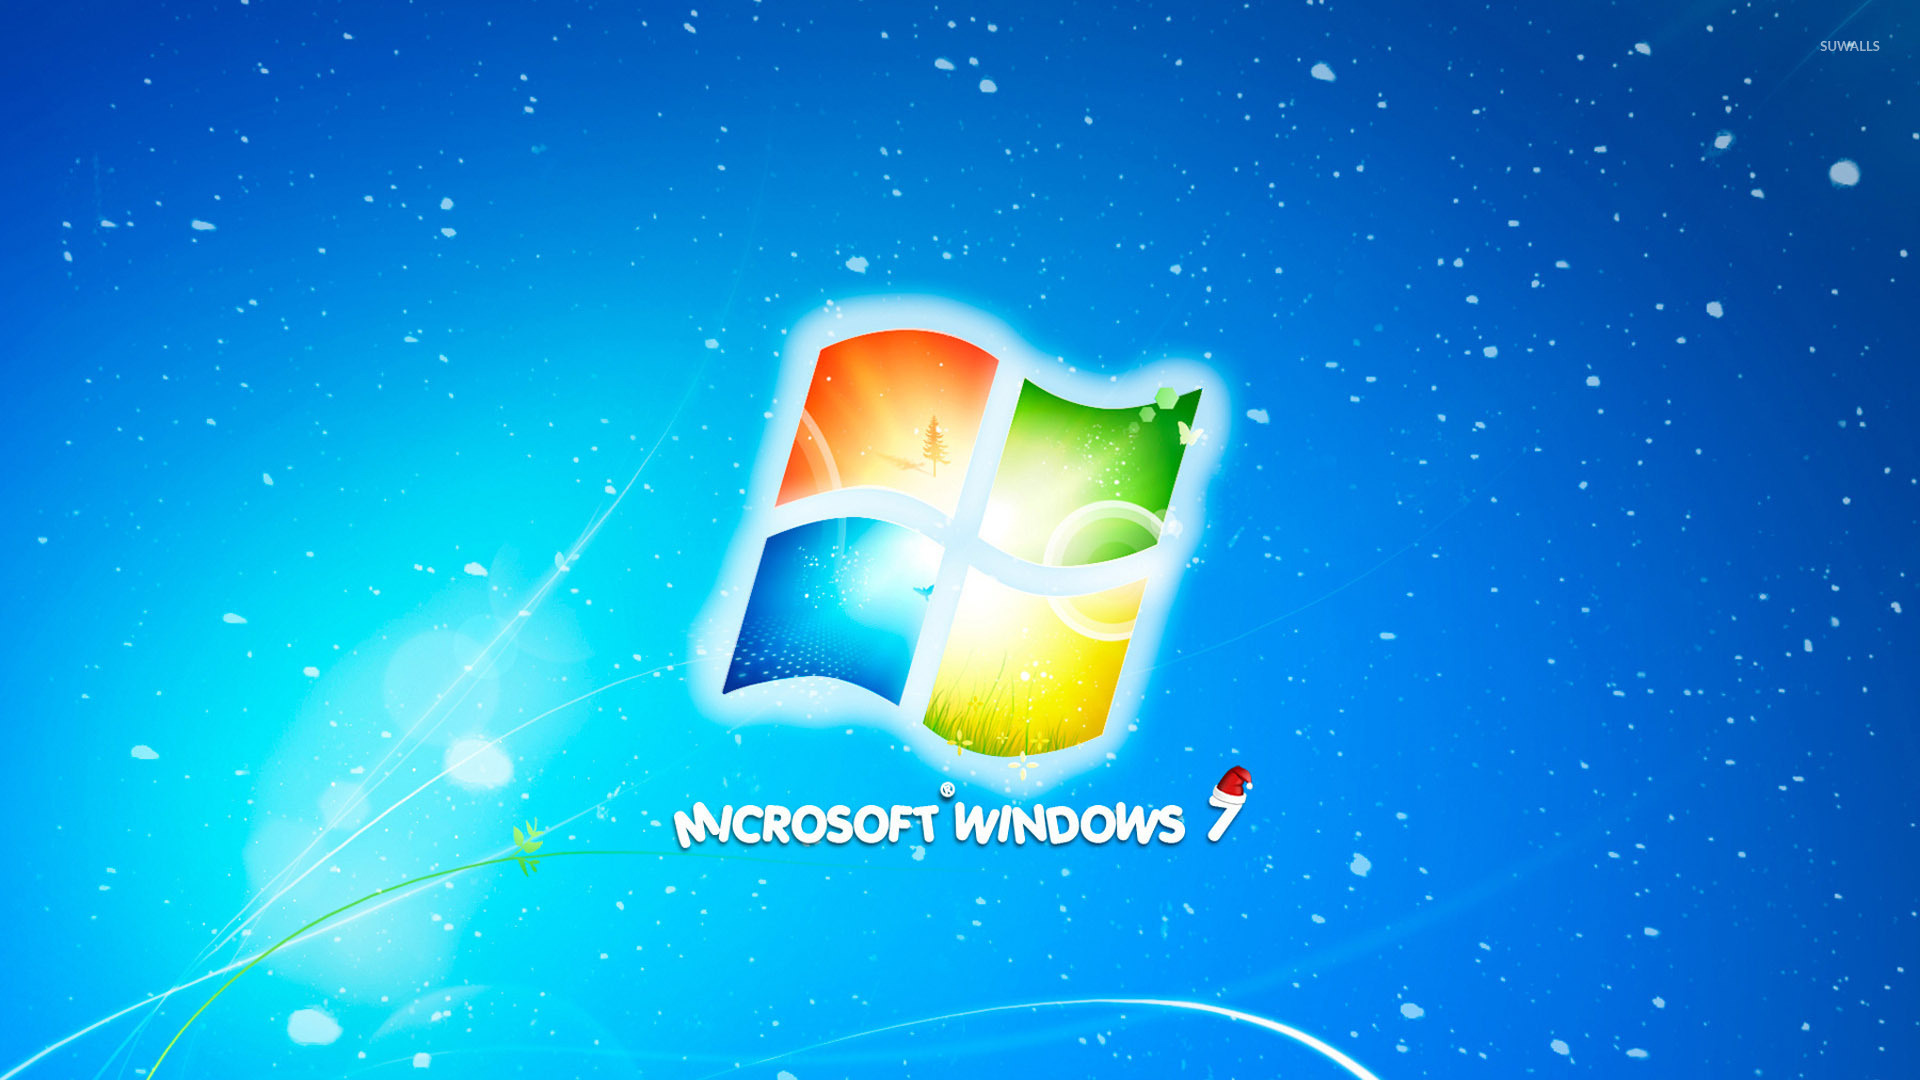 Các hình nền desktop Giáng sinh của Windows 7 sẽ khiến cho máy tính của bạn đầy không khí lễ hội và tạo cảm giác ấm áp vào mùa đông sắp tới. Hãy cùng chiêm ngưỡng những bức ảnh đẹp lung linh này!